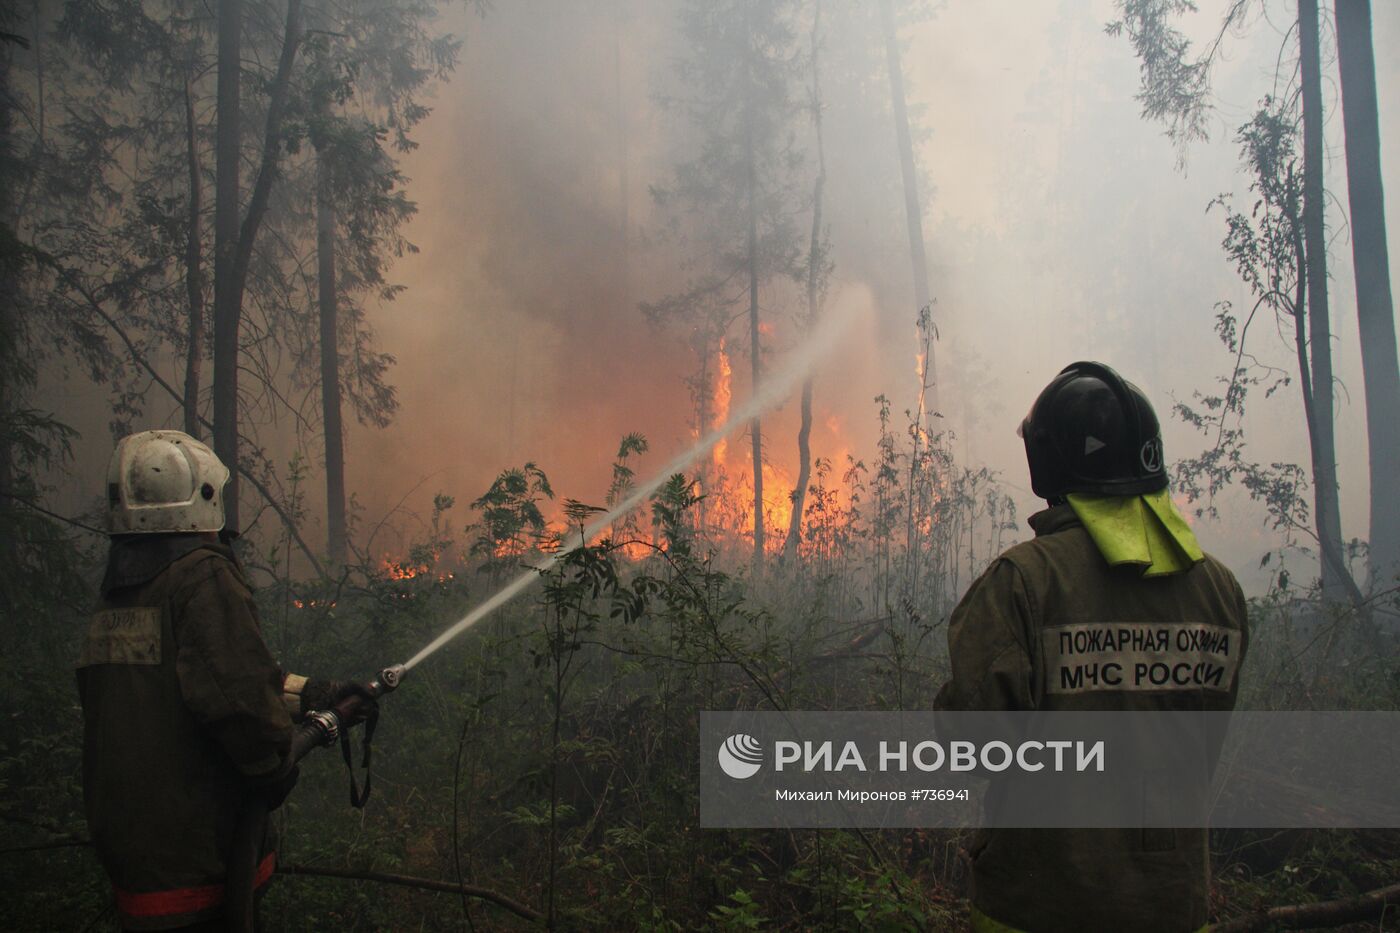 Тушение пожара в Орехово-Зуевском районе Московской области